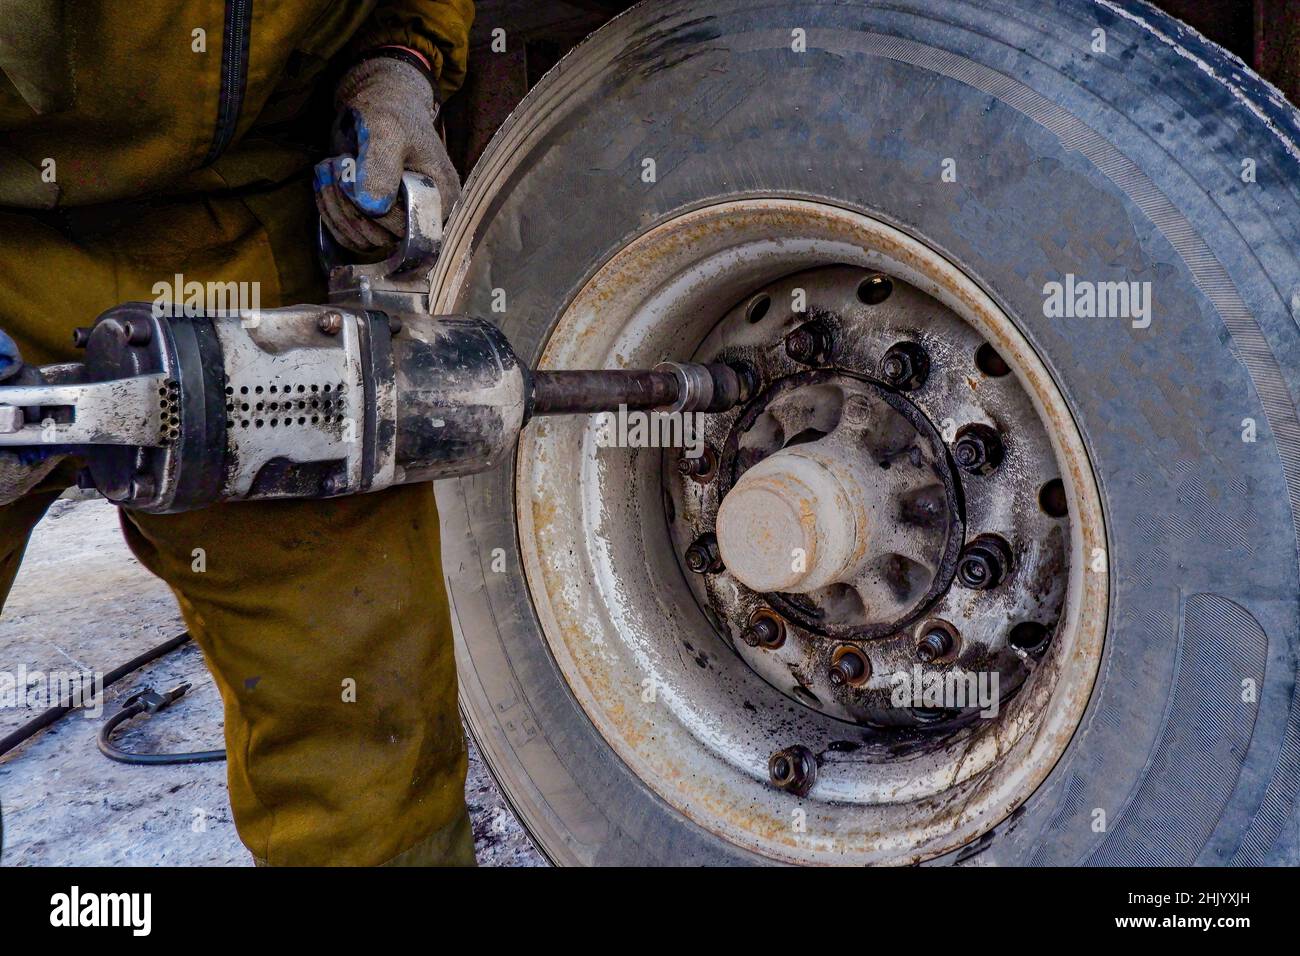 un addetto alla riparazione di pneumatici svita le ruote di un veicolo pesante con una chiave pneumatica, Foto Stock